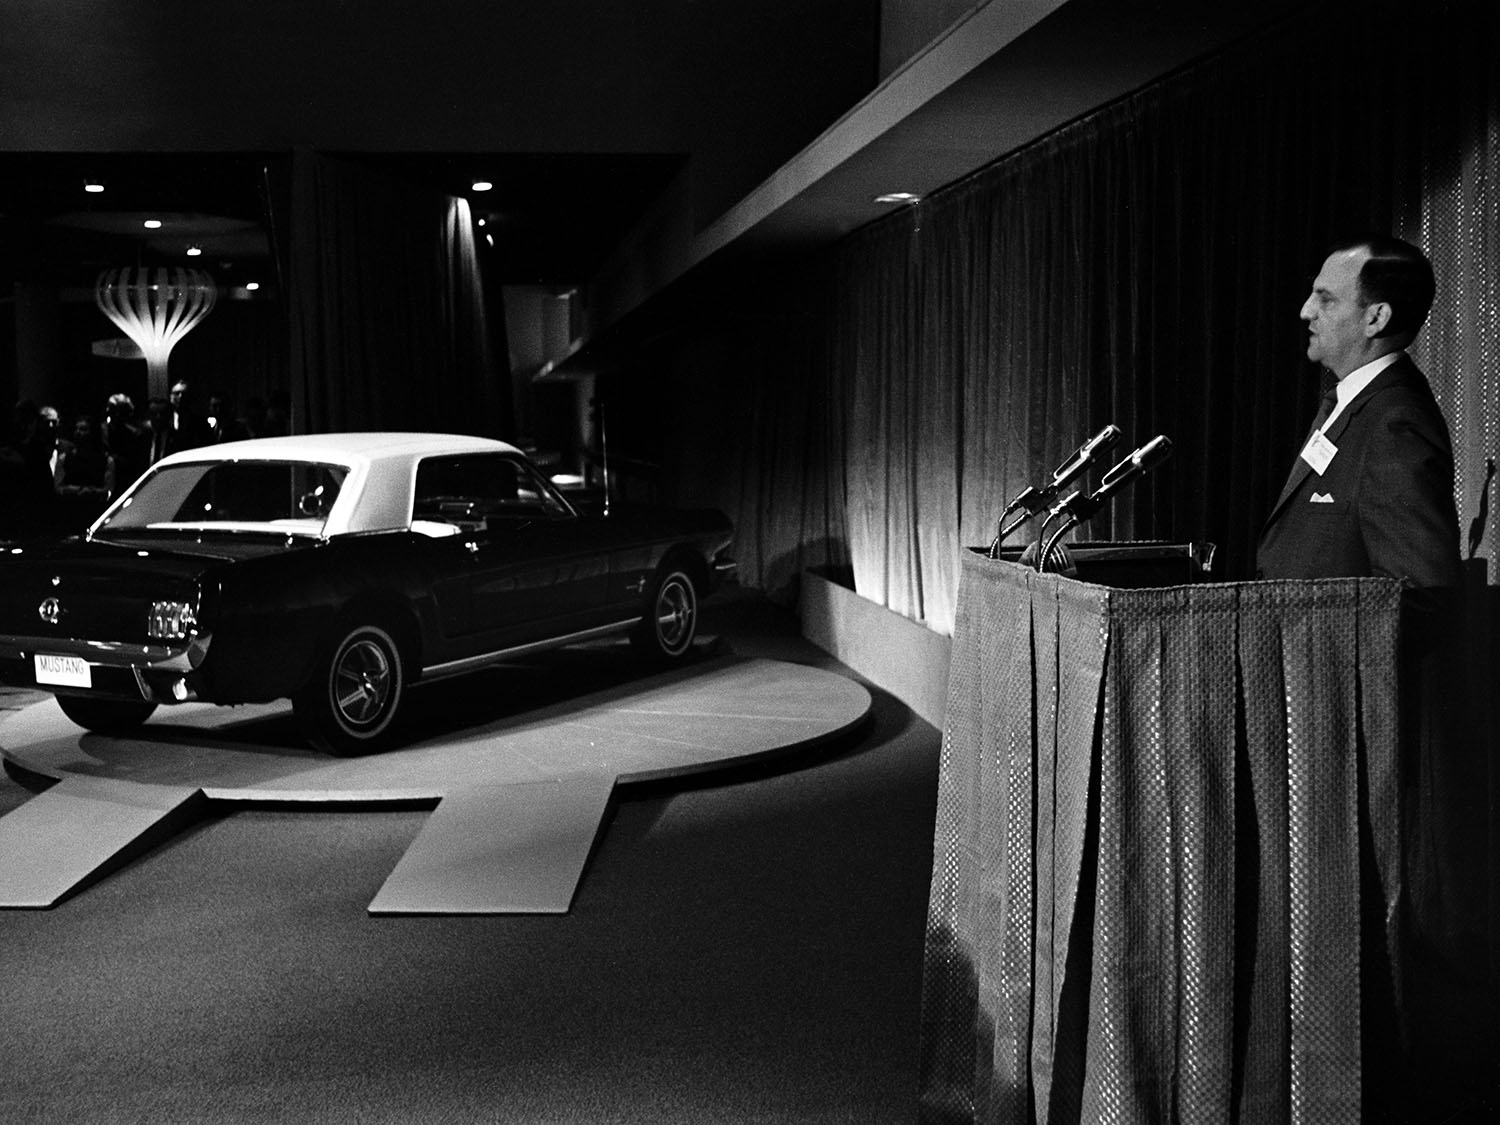 1964 Worlds Fair Ford Mustang introduction 1 Πώς γιορτάζει η Mustang τα 55 της χρόνια;